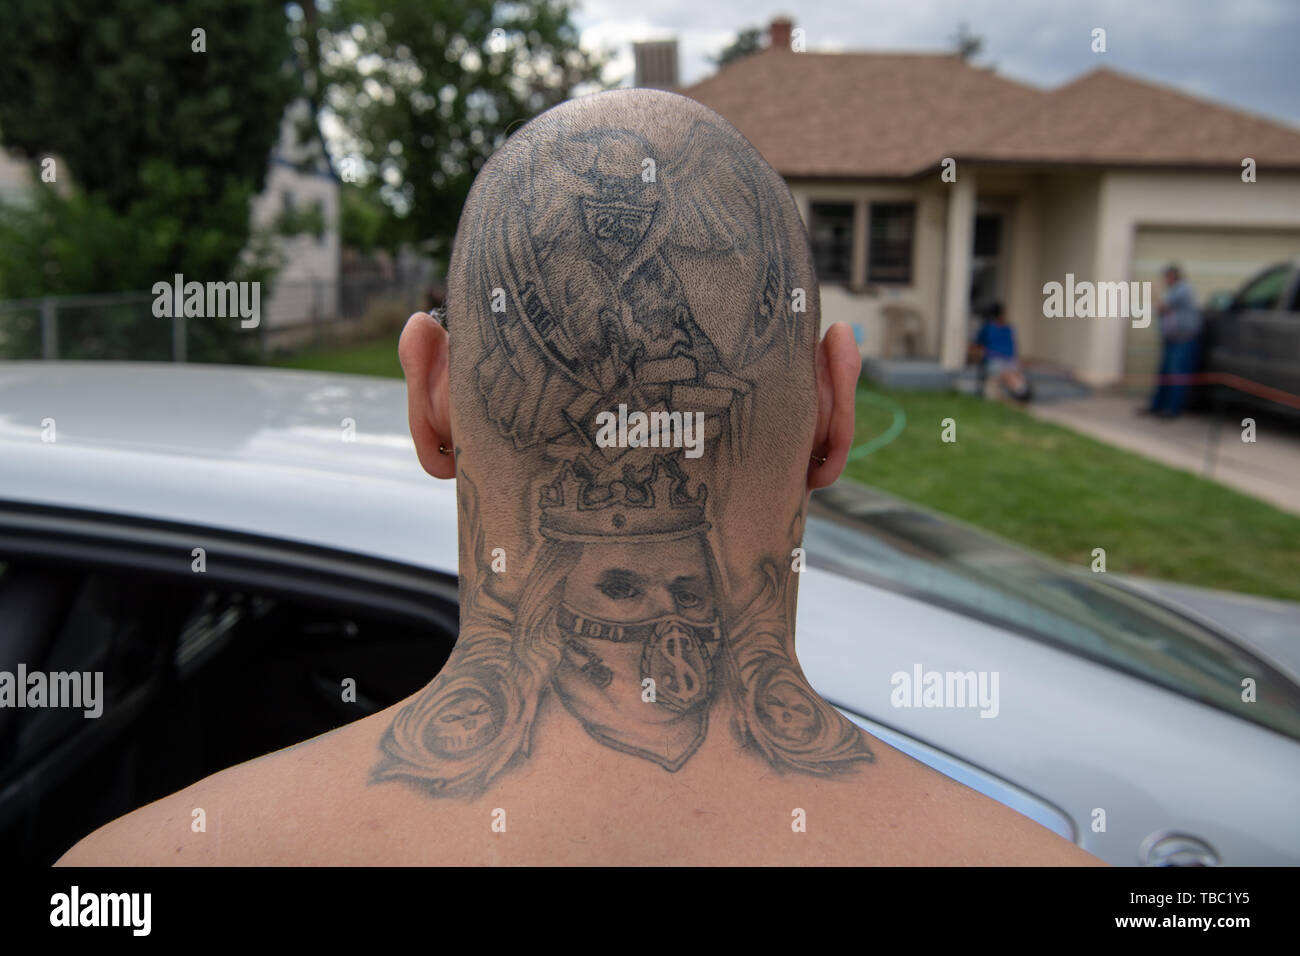 Stati Uniti Esegue il marshalling, federali, statali e locali di funzionari di polizia manette e arrestare un fuggiasco con pista di tatuaggi sulla sua testa rasata Giugno 7, 2018 in Colorado Springs, Colorado. Foto Stock